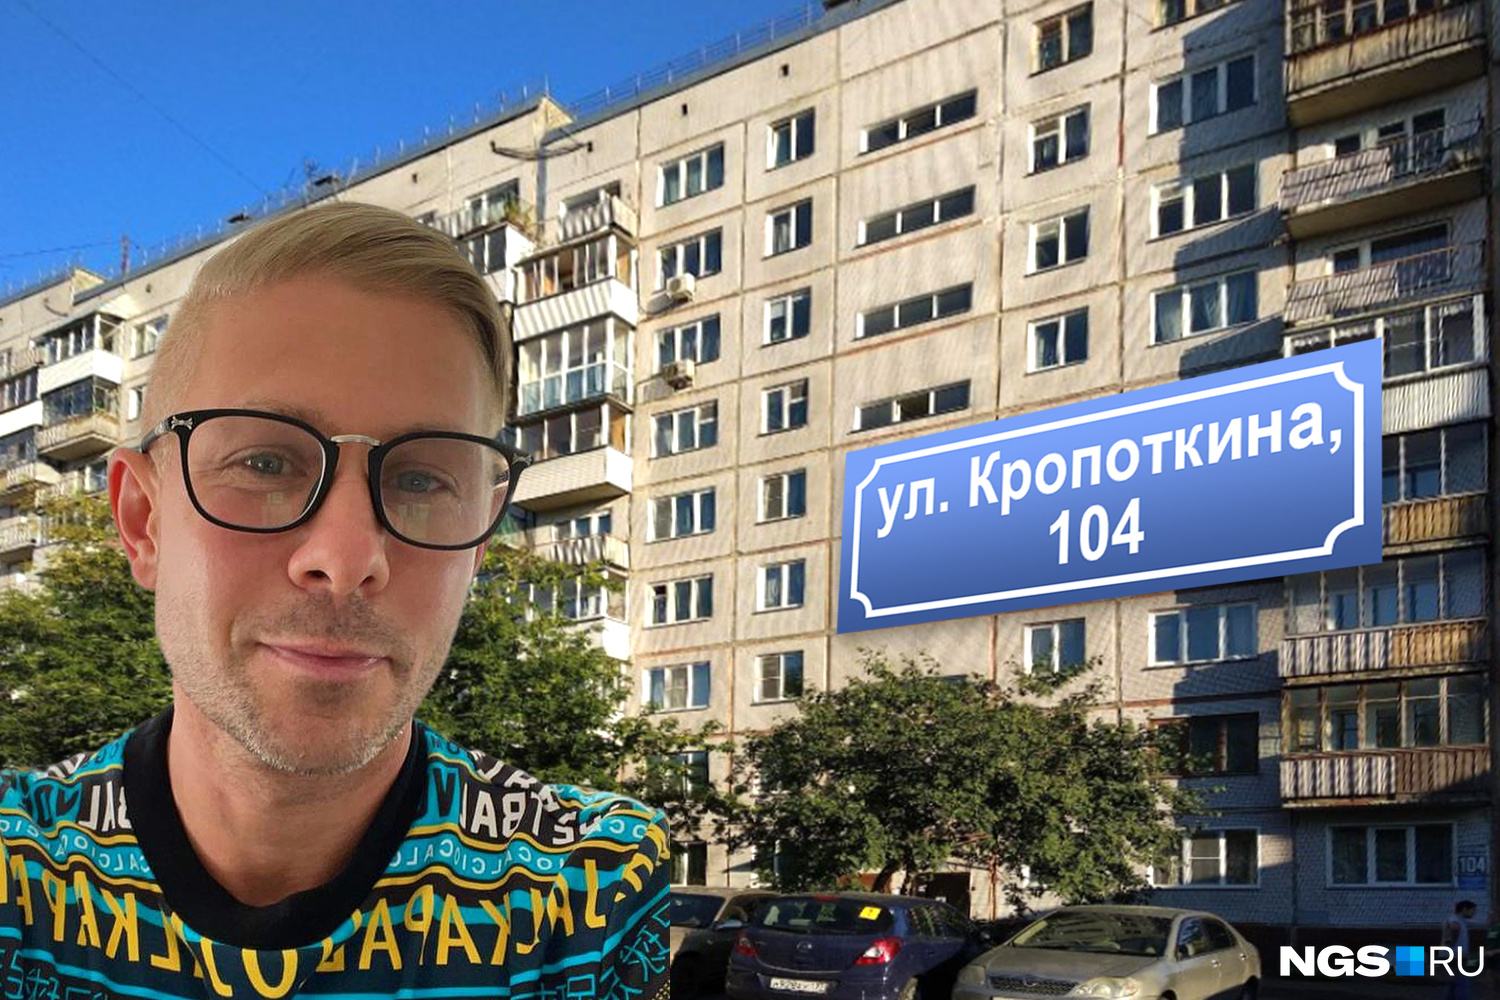 А вы помните, каким был Митя Фомин, будучи в Новосибирске?